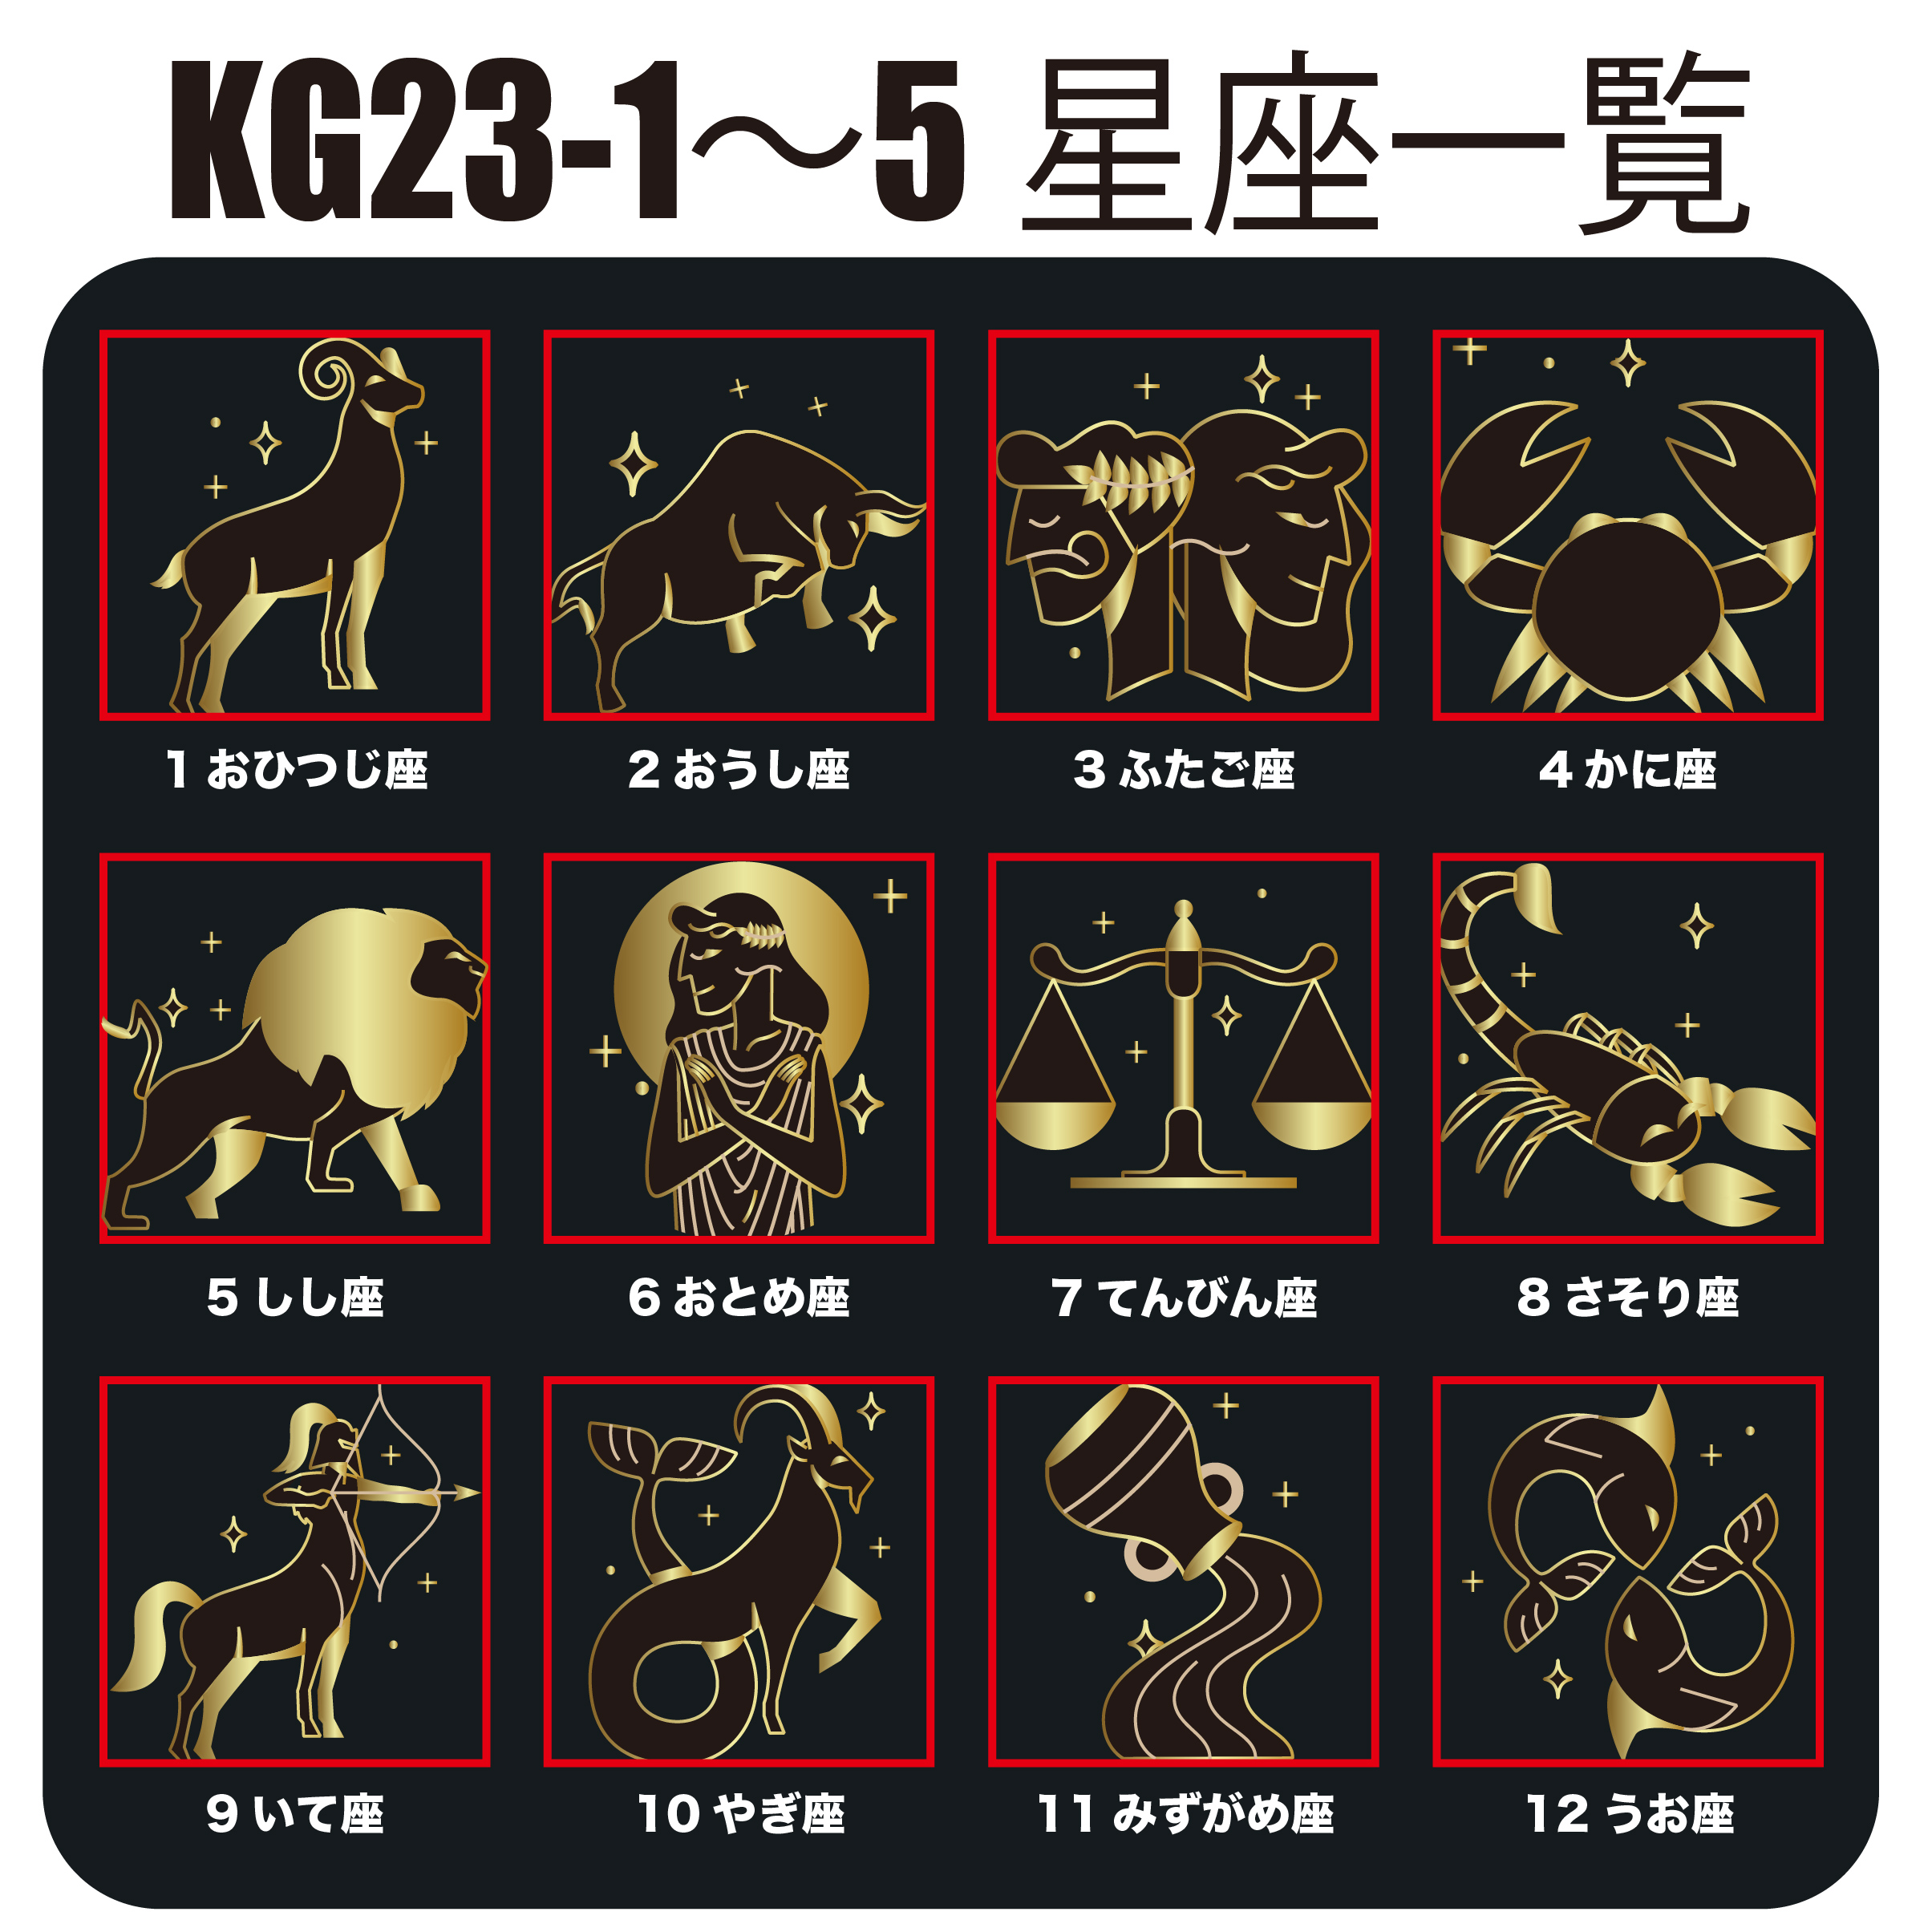 KEGEL KG23-4(受注生産)